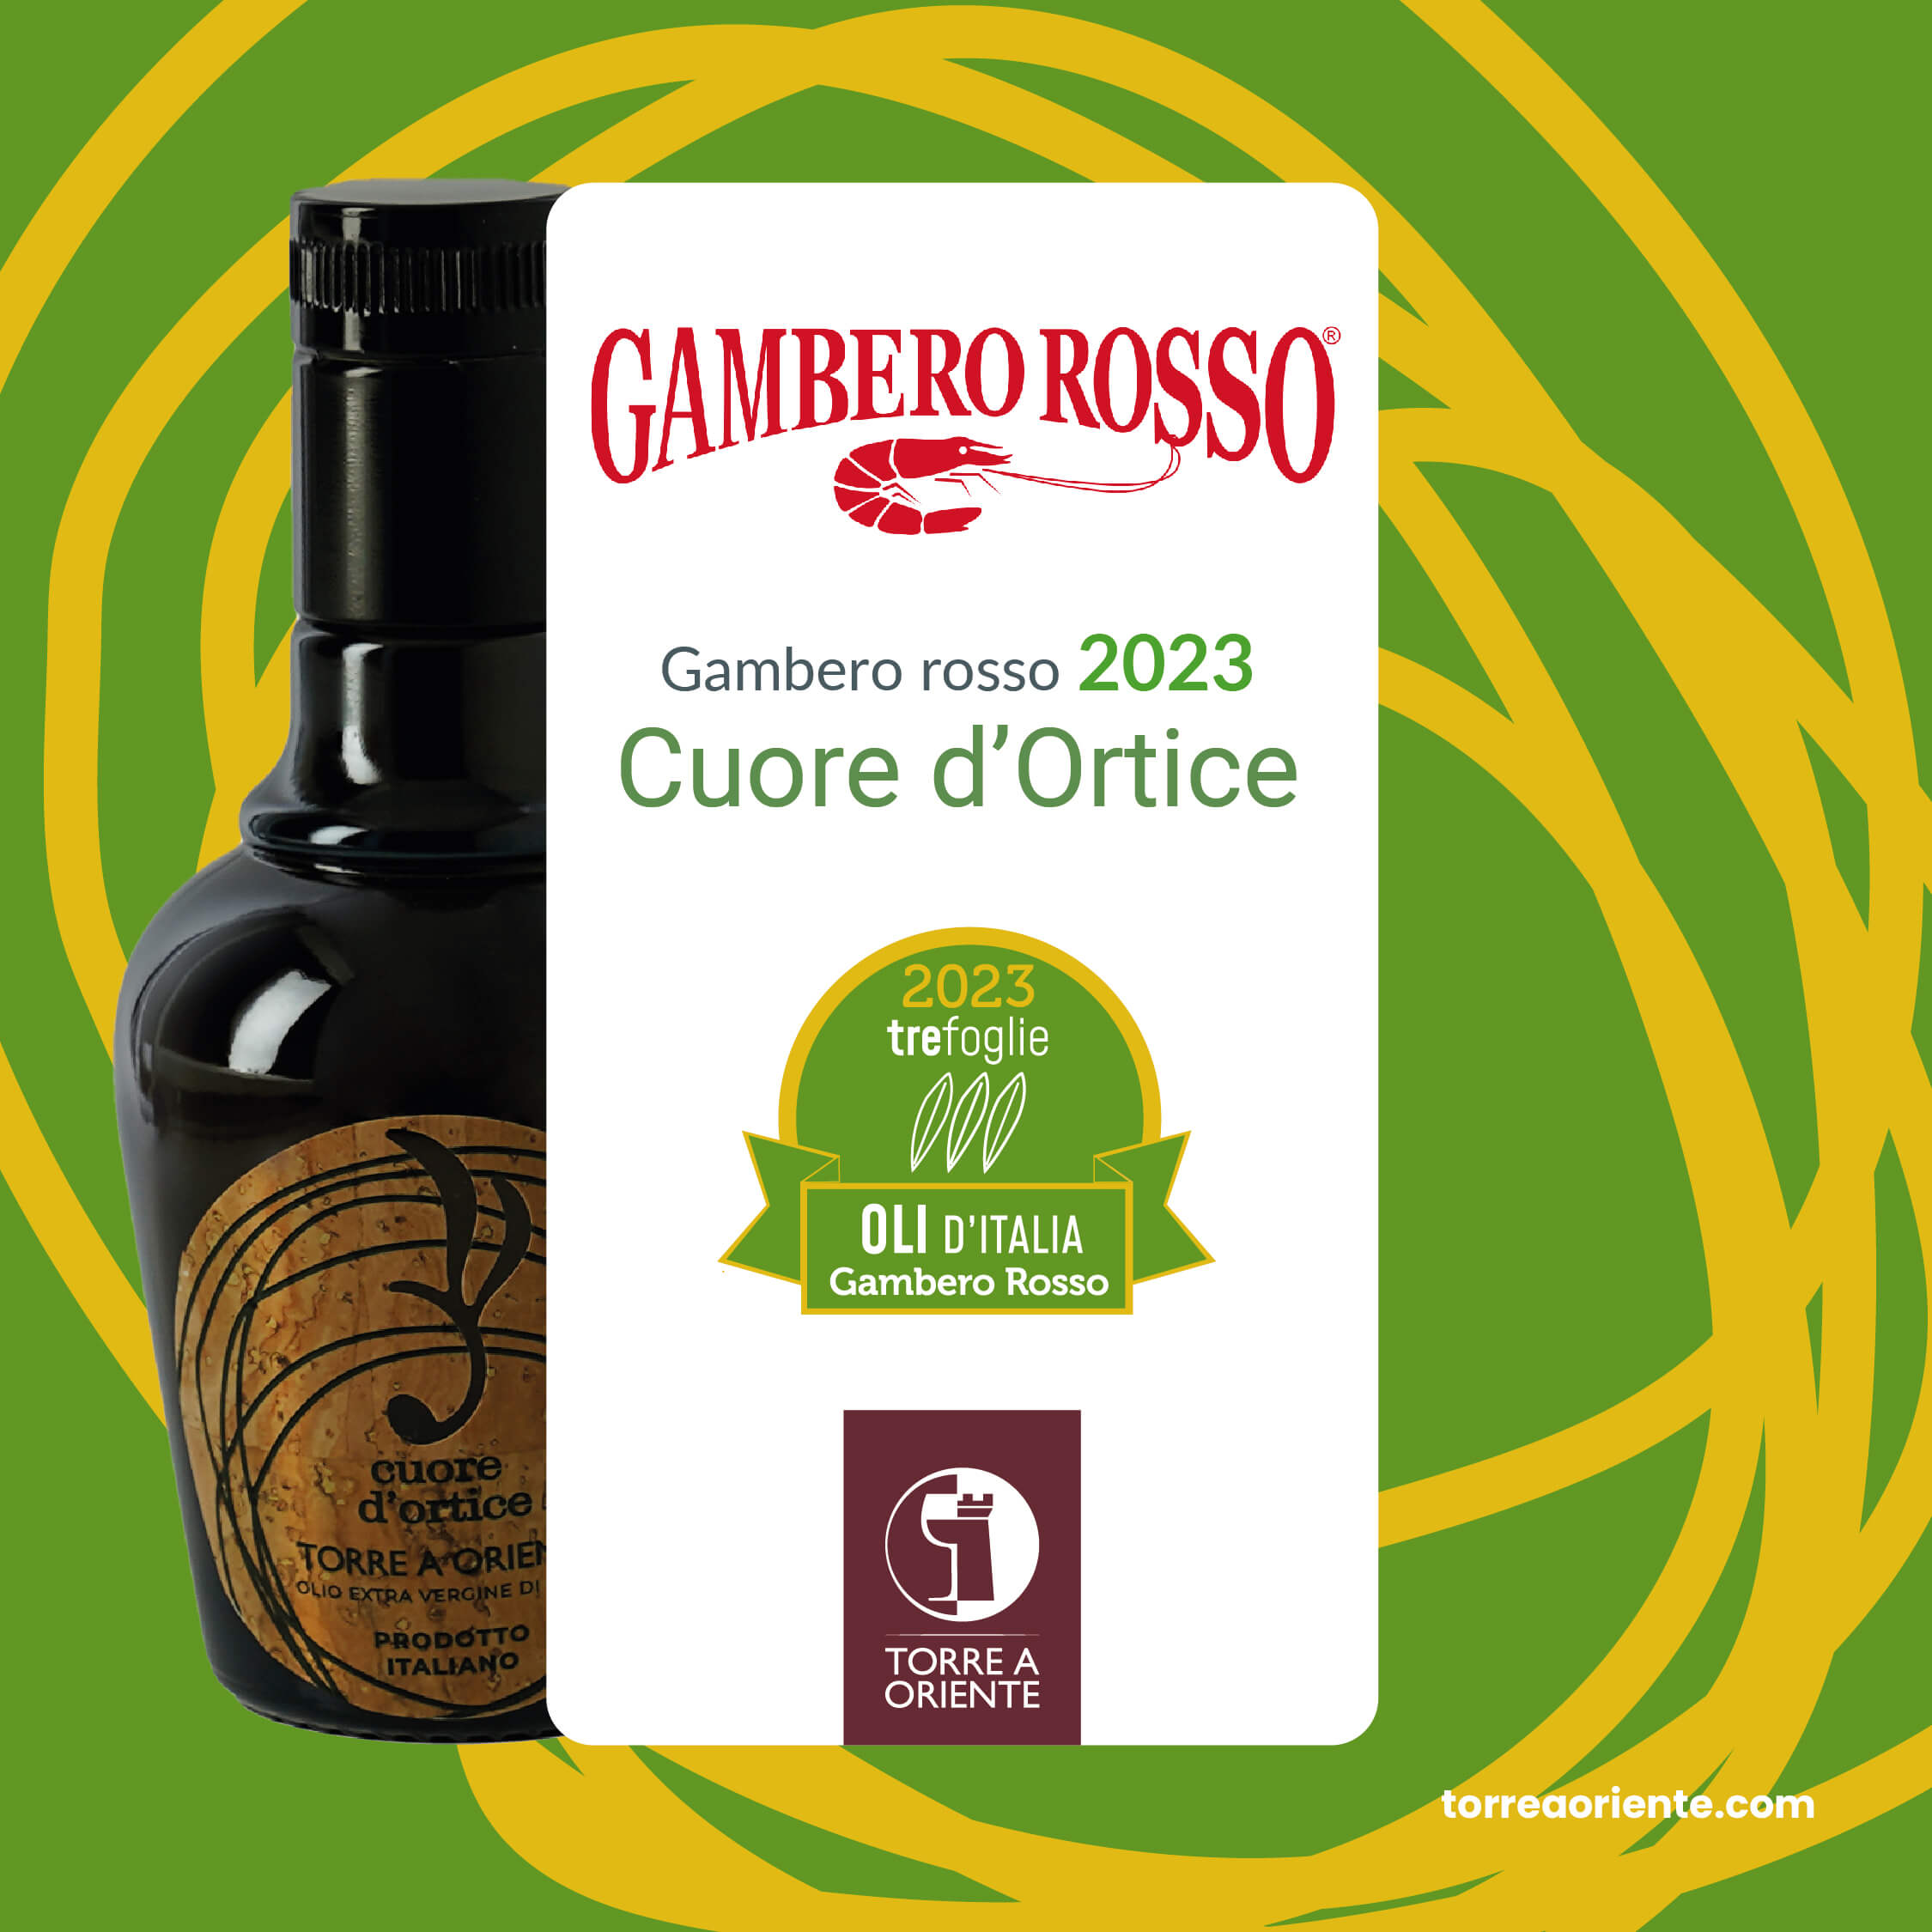 Cuore d’Ortice – Gambero rosso Tre Foglie 2023